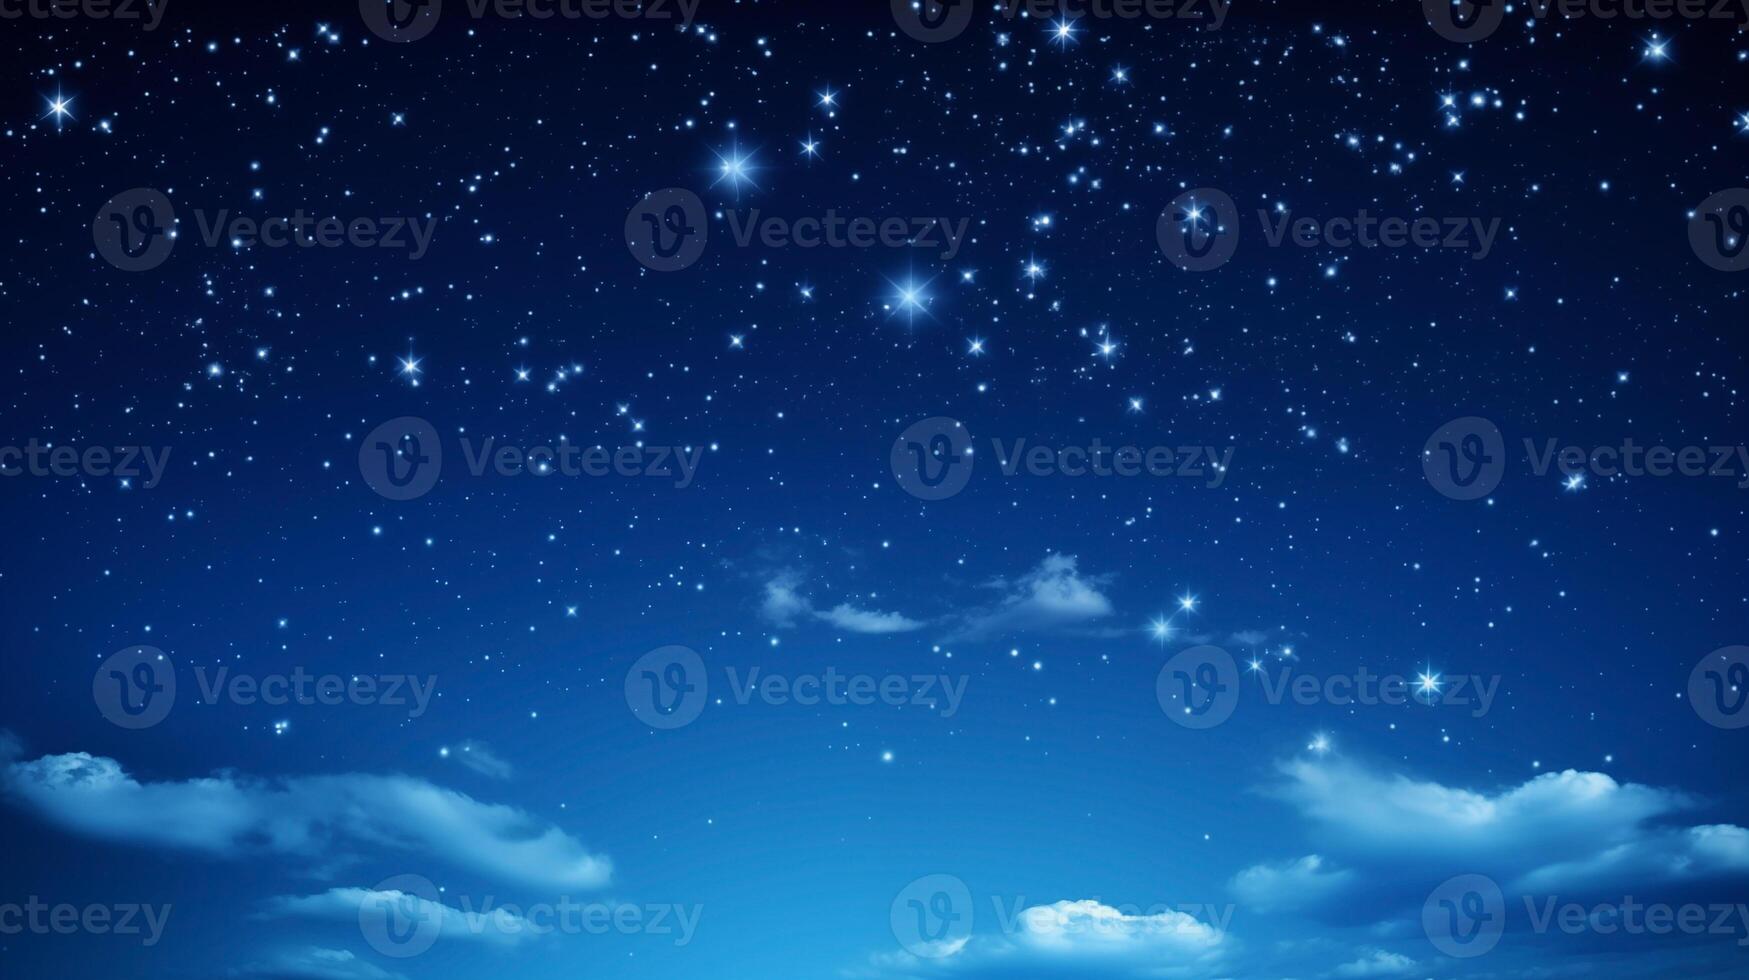 eterisk blå moln spridd tvärs över en starry natt himmel bakgrund foto